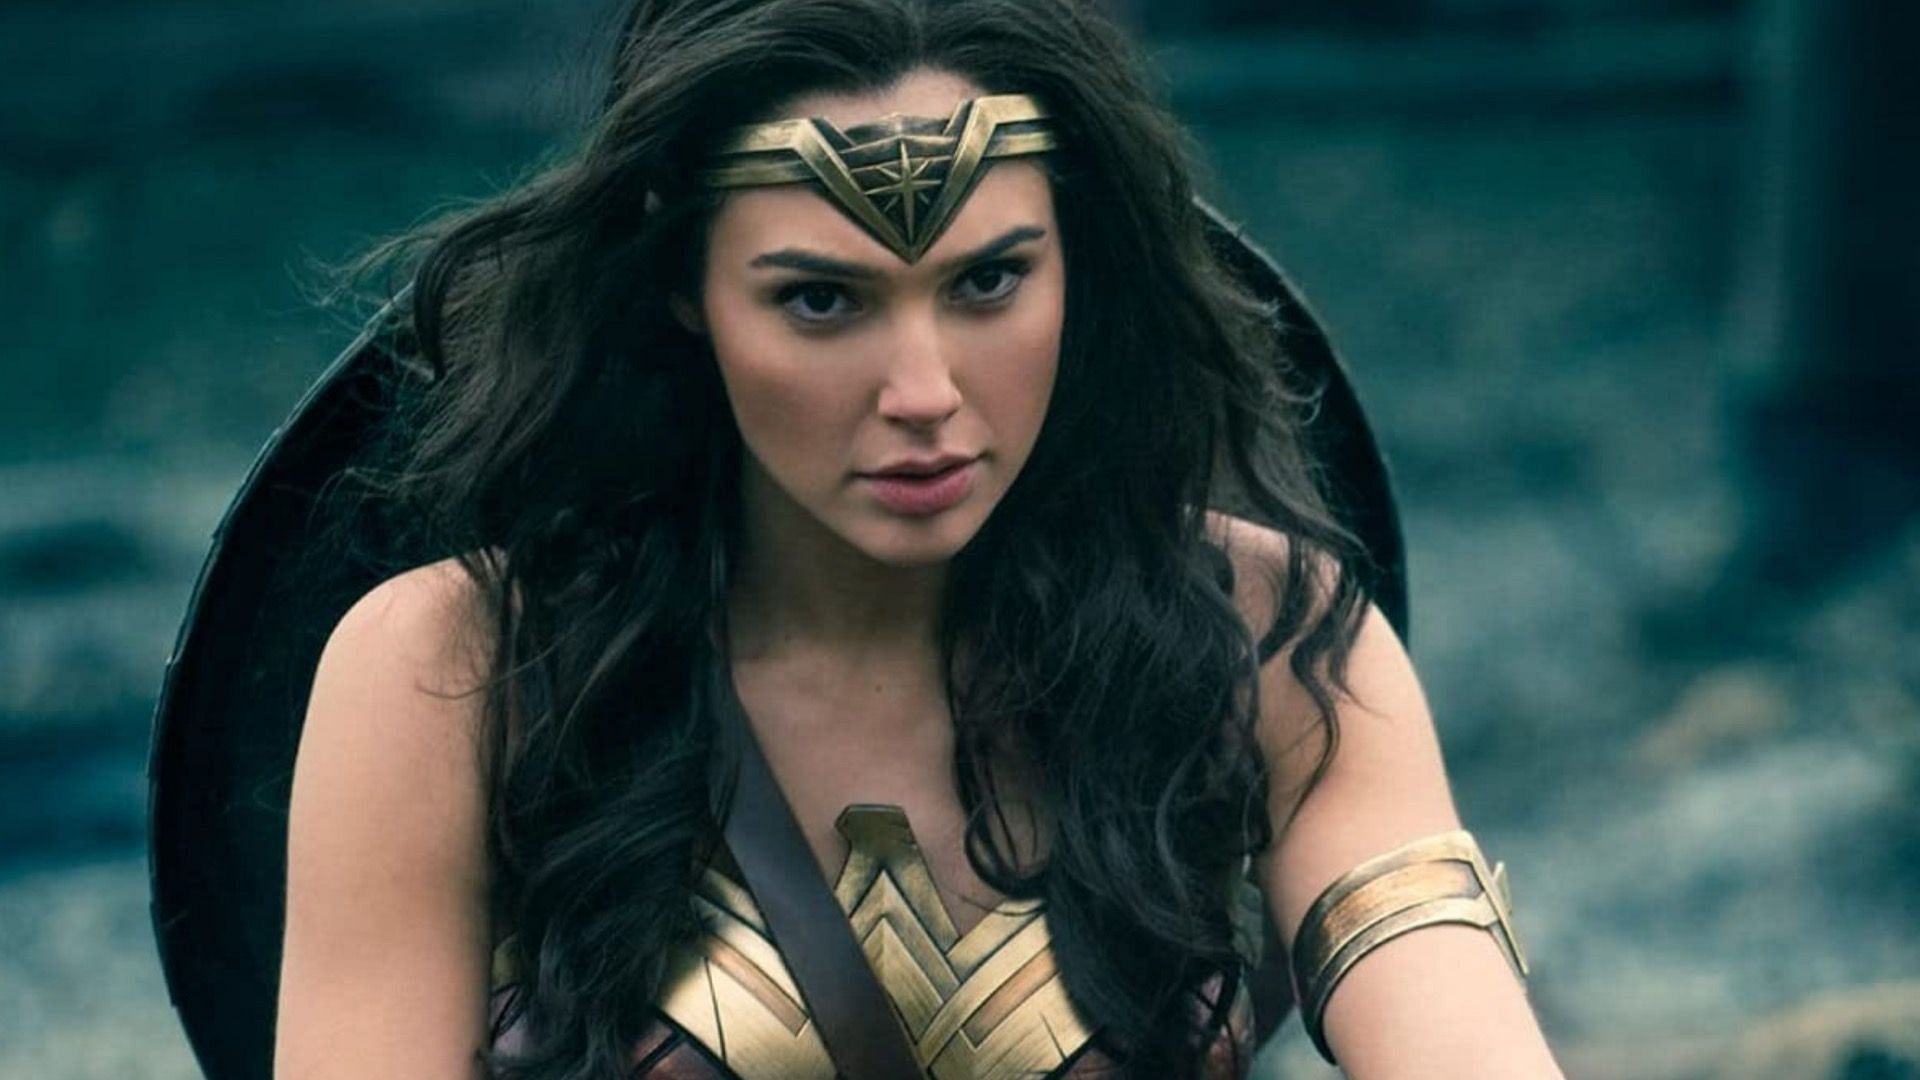 A still from Wonder Woman, 2017 (Image via Warner Bros.)